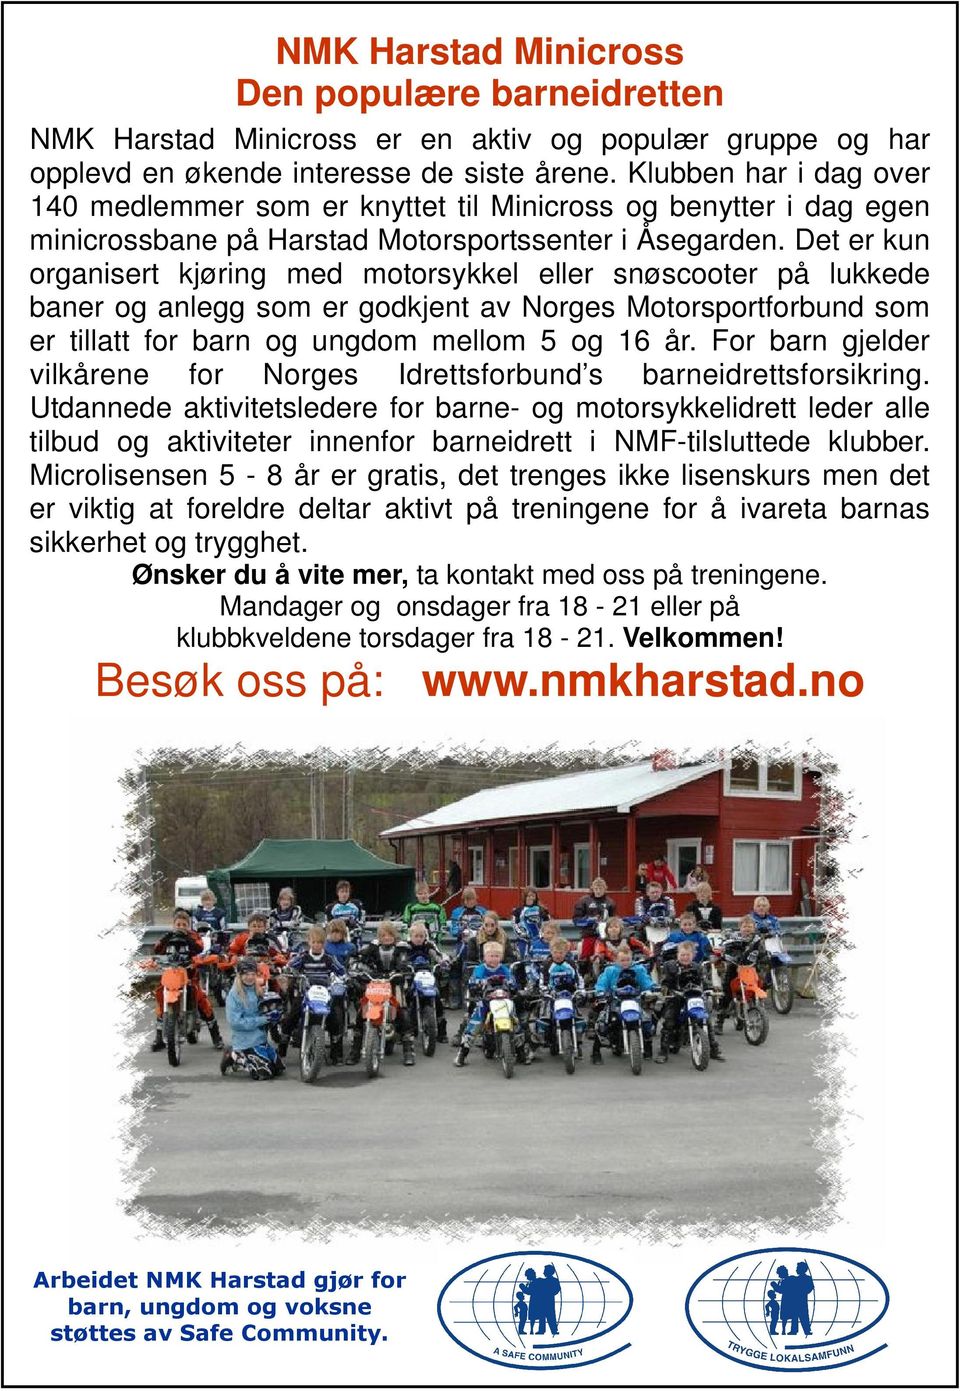 Det er kun organisert kjøring med motorsykkel eller snøscooter på lukkede baner og anlegg som er godkjent av Norges Motorsportforbund som er tillatt for barn og ungdom mellom 5 og 16 år.